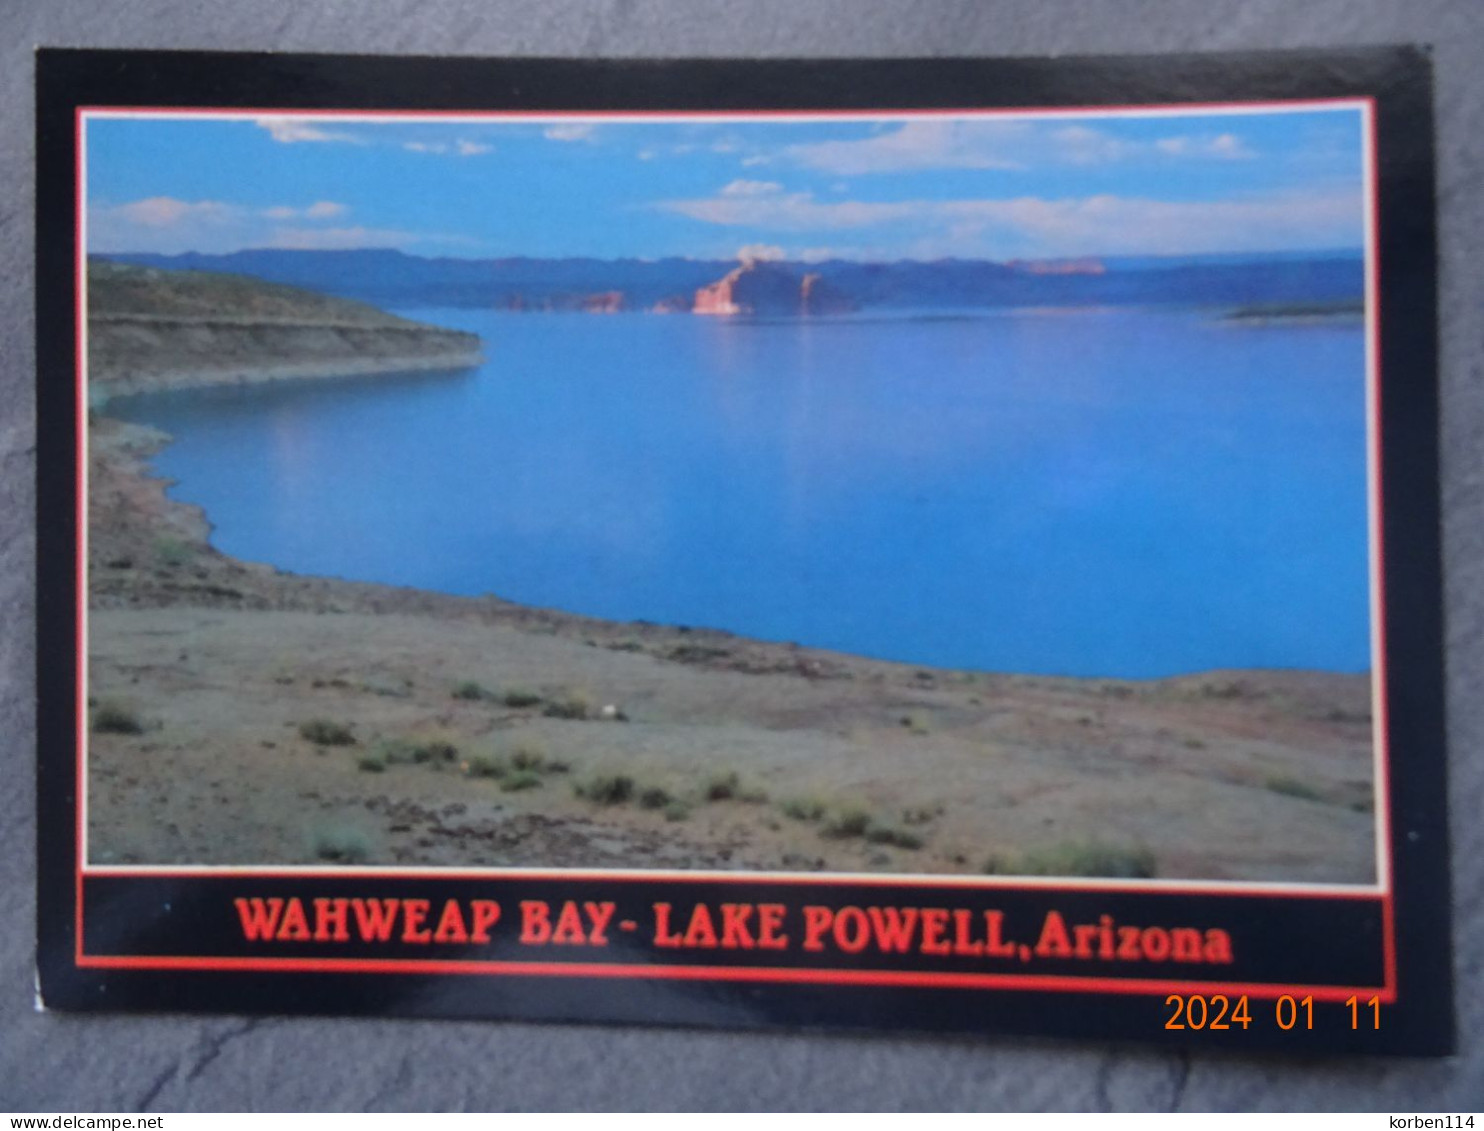 WAHWEAP BAY - Lake Powell